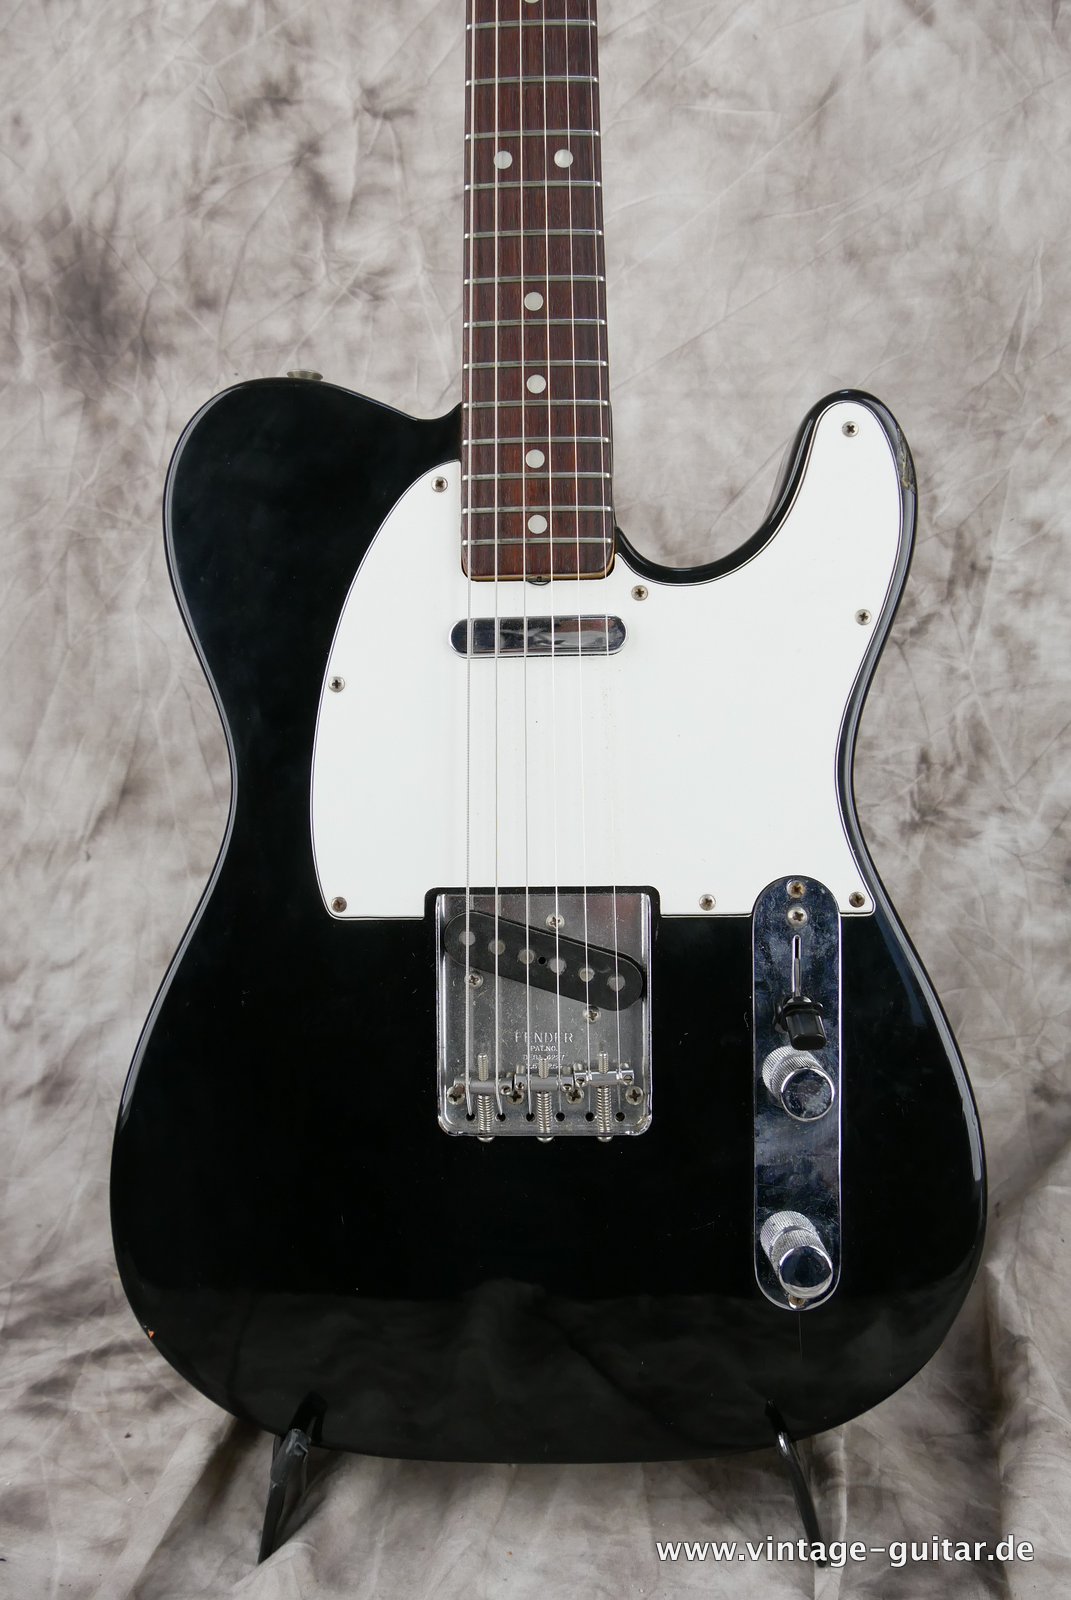 img/vintage/4840/Fender-Telecaster-1972-black-over-sunburst-002.JPG